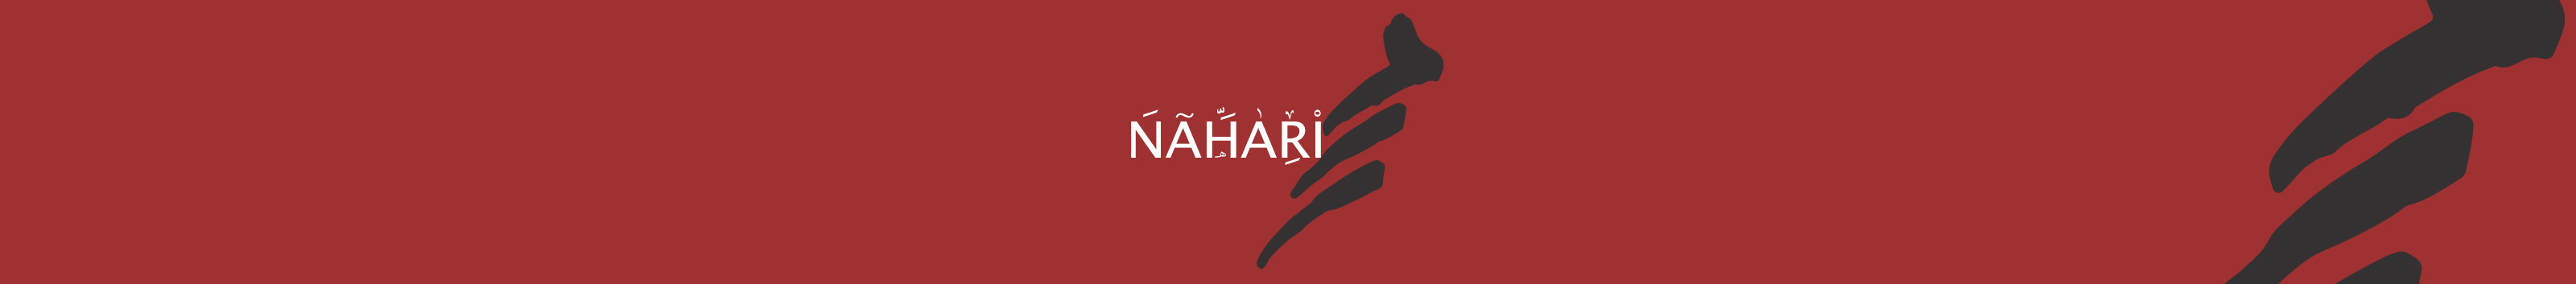 mohamed nahari's profile banner